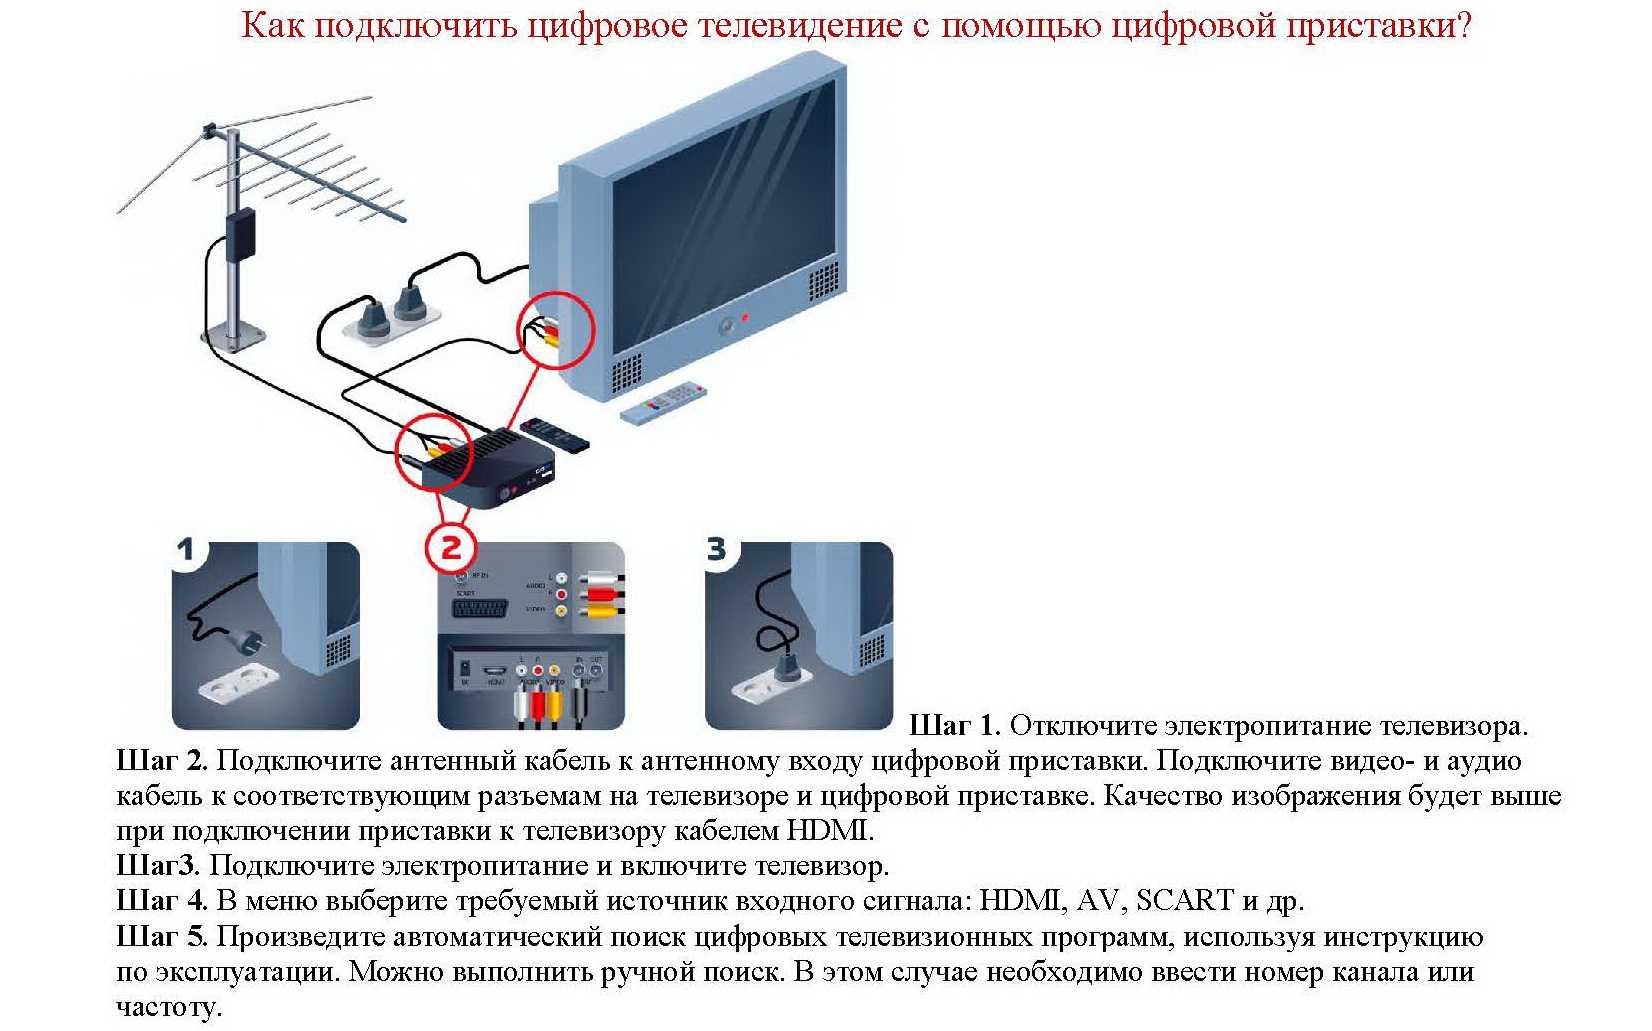 Как подключить и настроить IPTV на телевизоре через приставку Беспроводное подключение и настройка интерактивного телевидения на телевизорах Samsung, LG, Philips